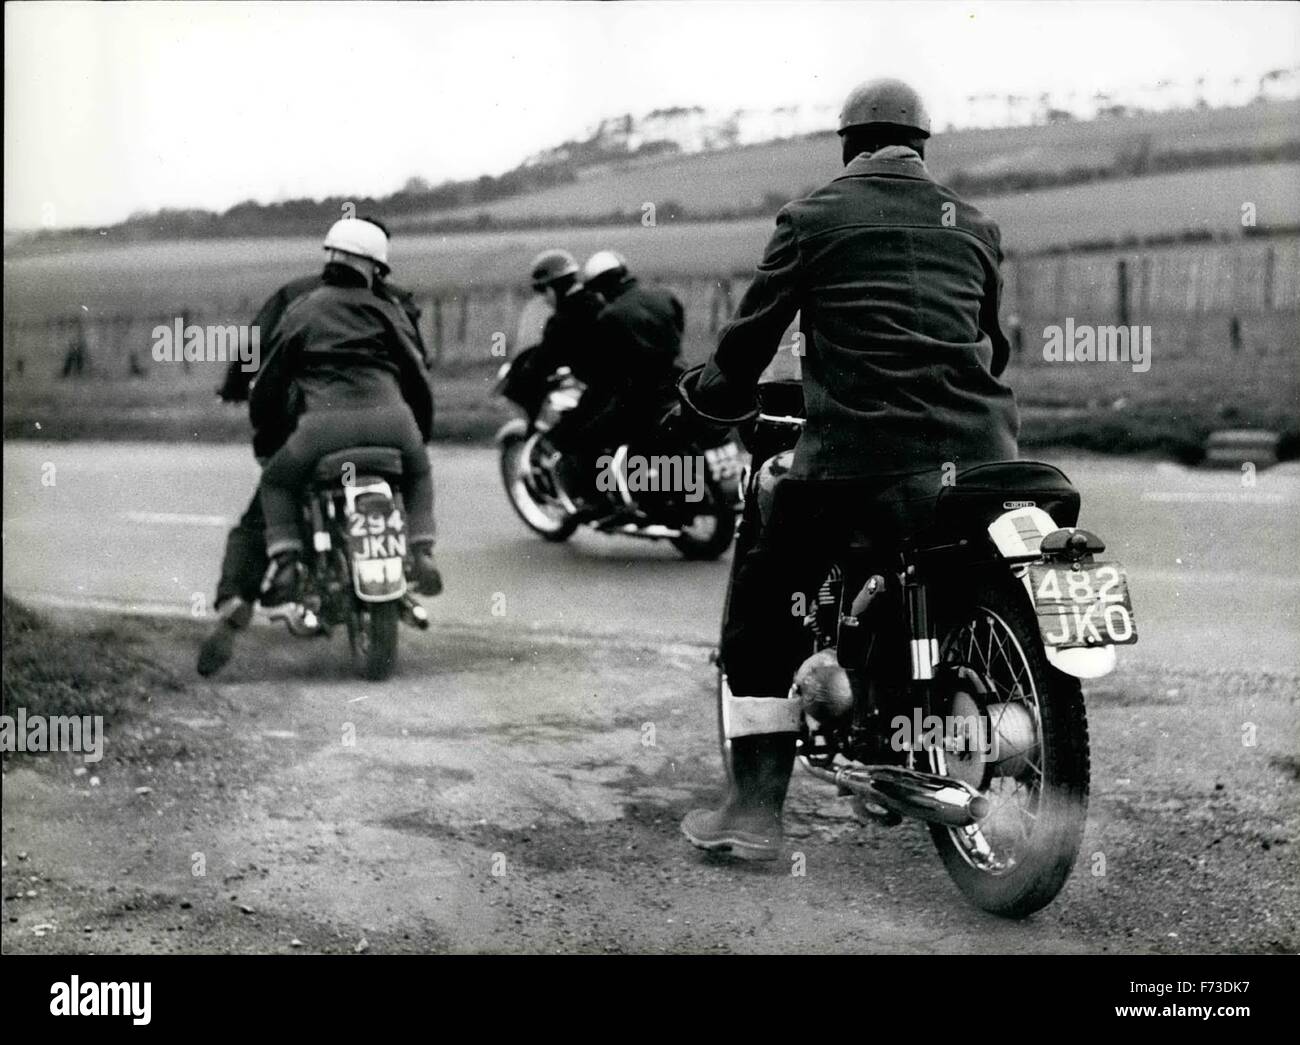 1954 - membre d'un gang de moto veste en cuir de graissage. Quitter le café : Gravier est craché sur les roues comme les motards de la ''Speedway'', généralement le droit le plus proche de Patch Road. © Keystone Photos USA/ZUMAPRESS.com/Alamy Live News Banque D'Images